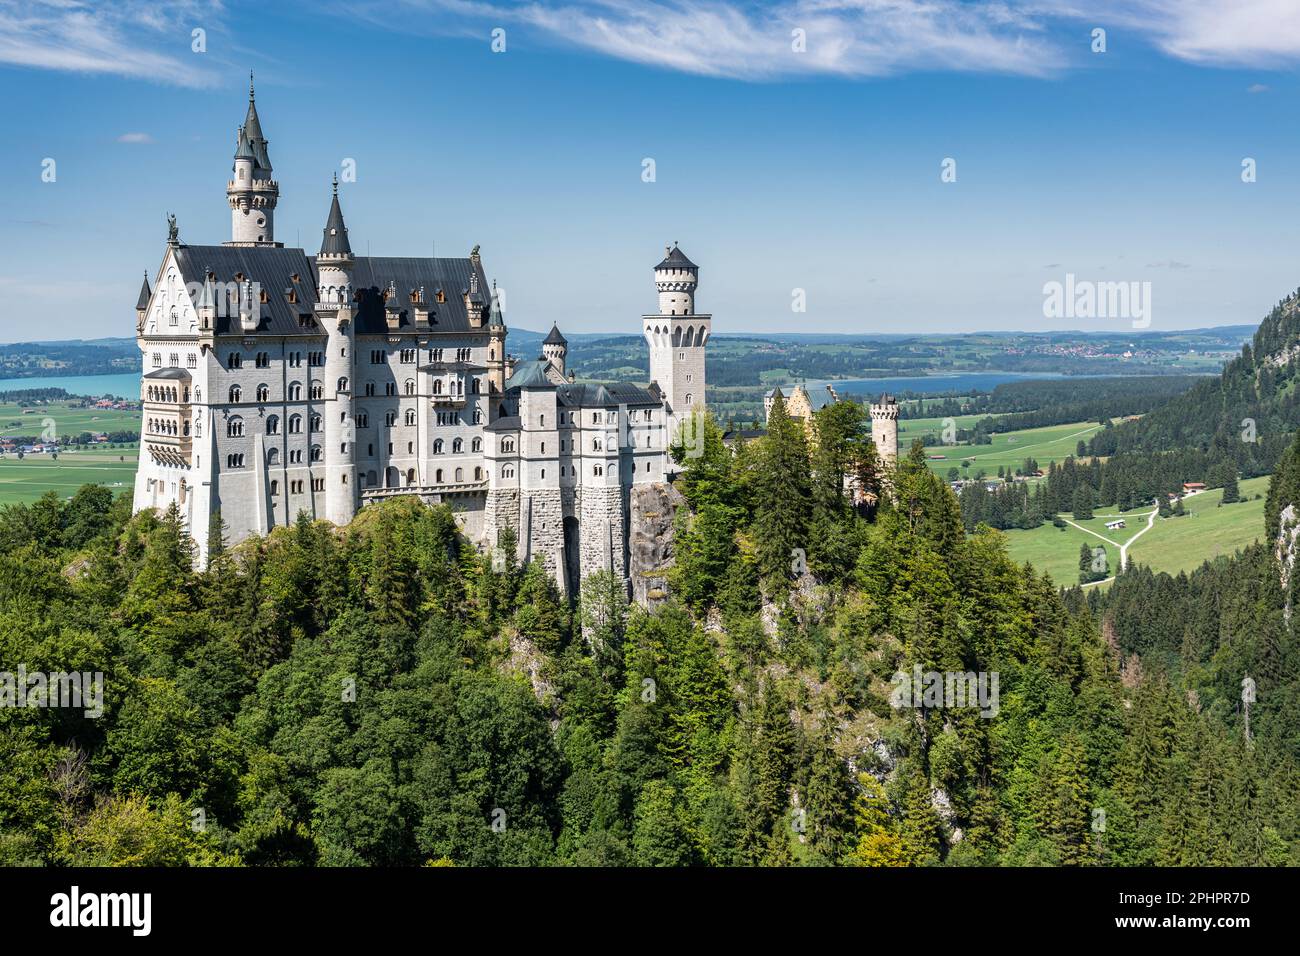 Blick auf das Schloss Neuschwanstein, eines der berühmtesten und berühmtesten Schlösser Deutschlands in den Bayerischen alpen Stockfoto